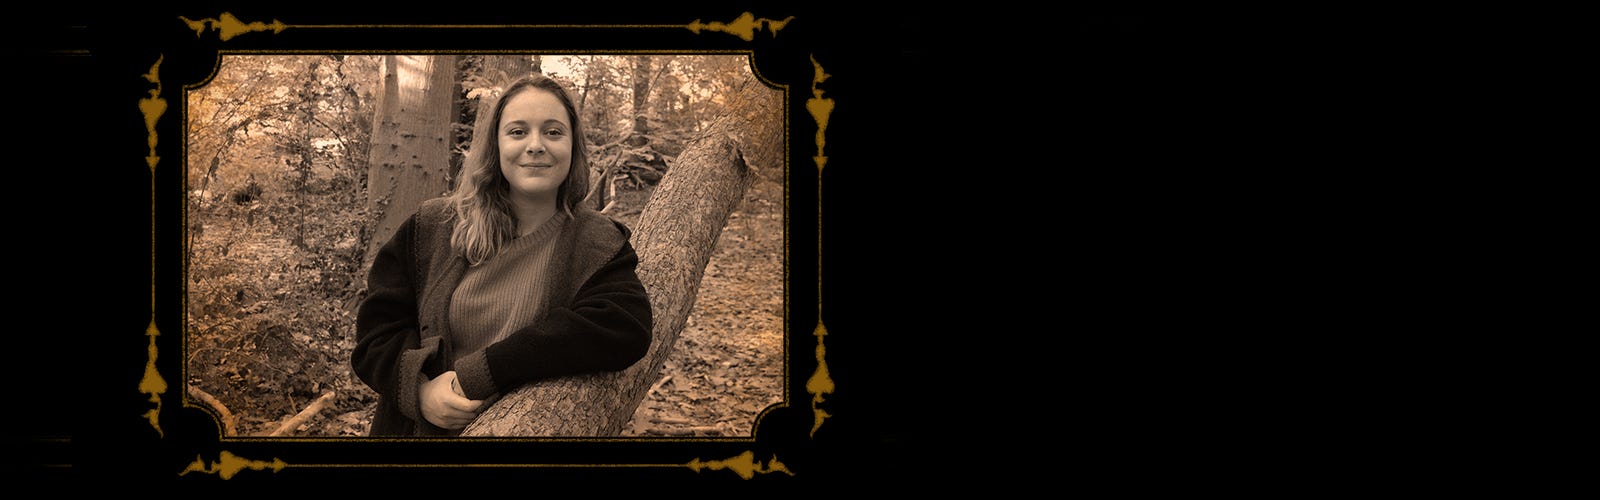 Portrait sépia d’une jeune femme dans les bois